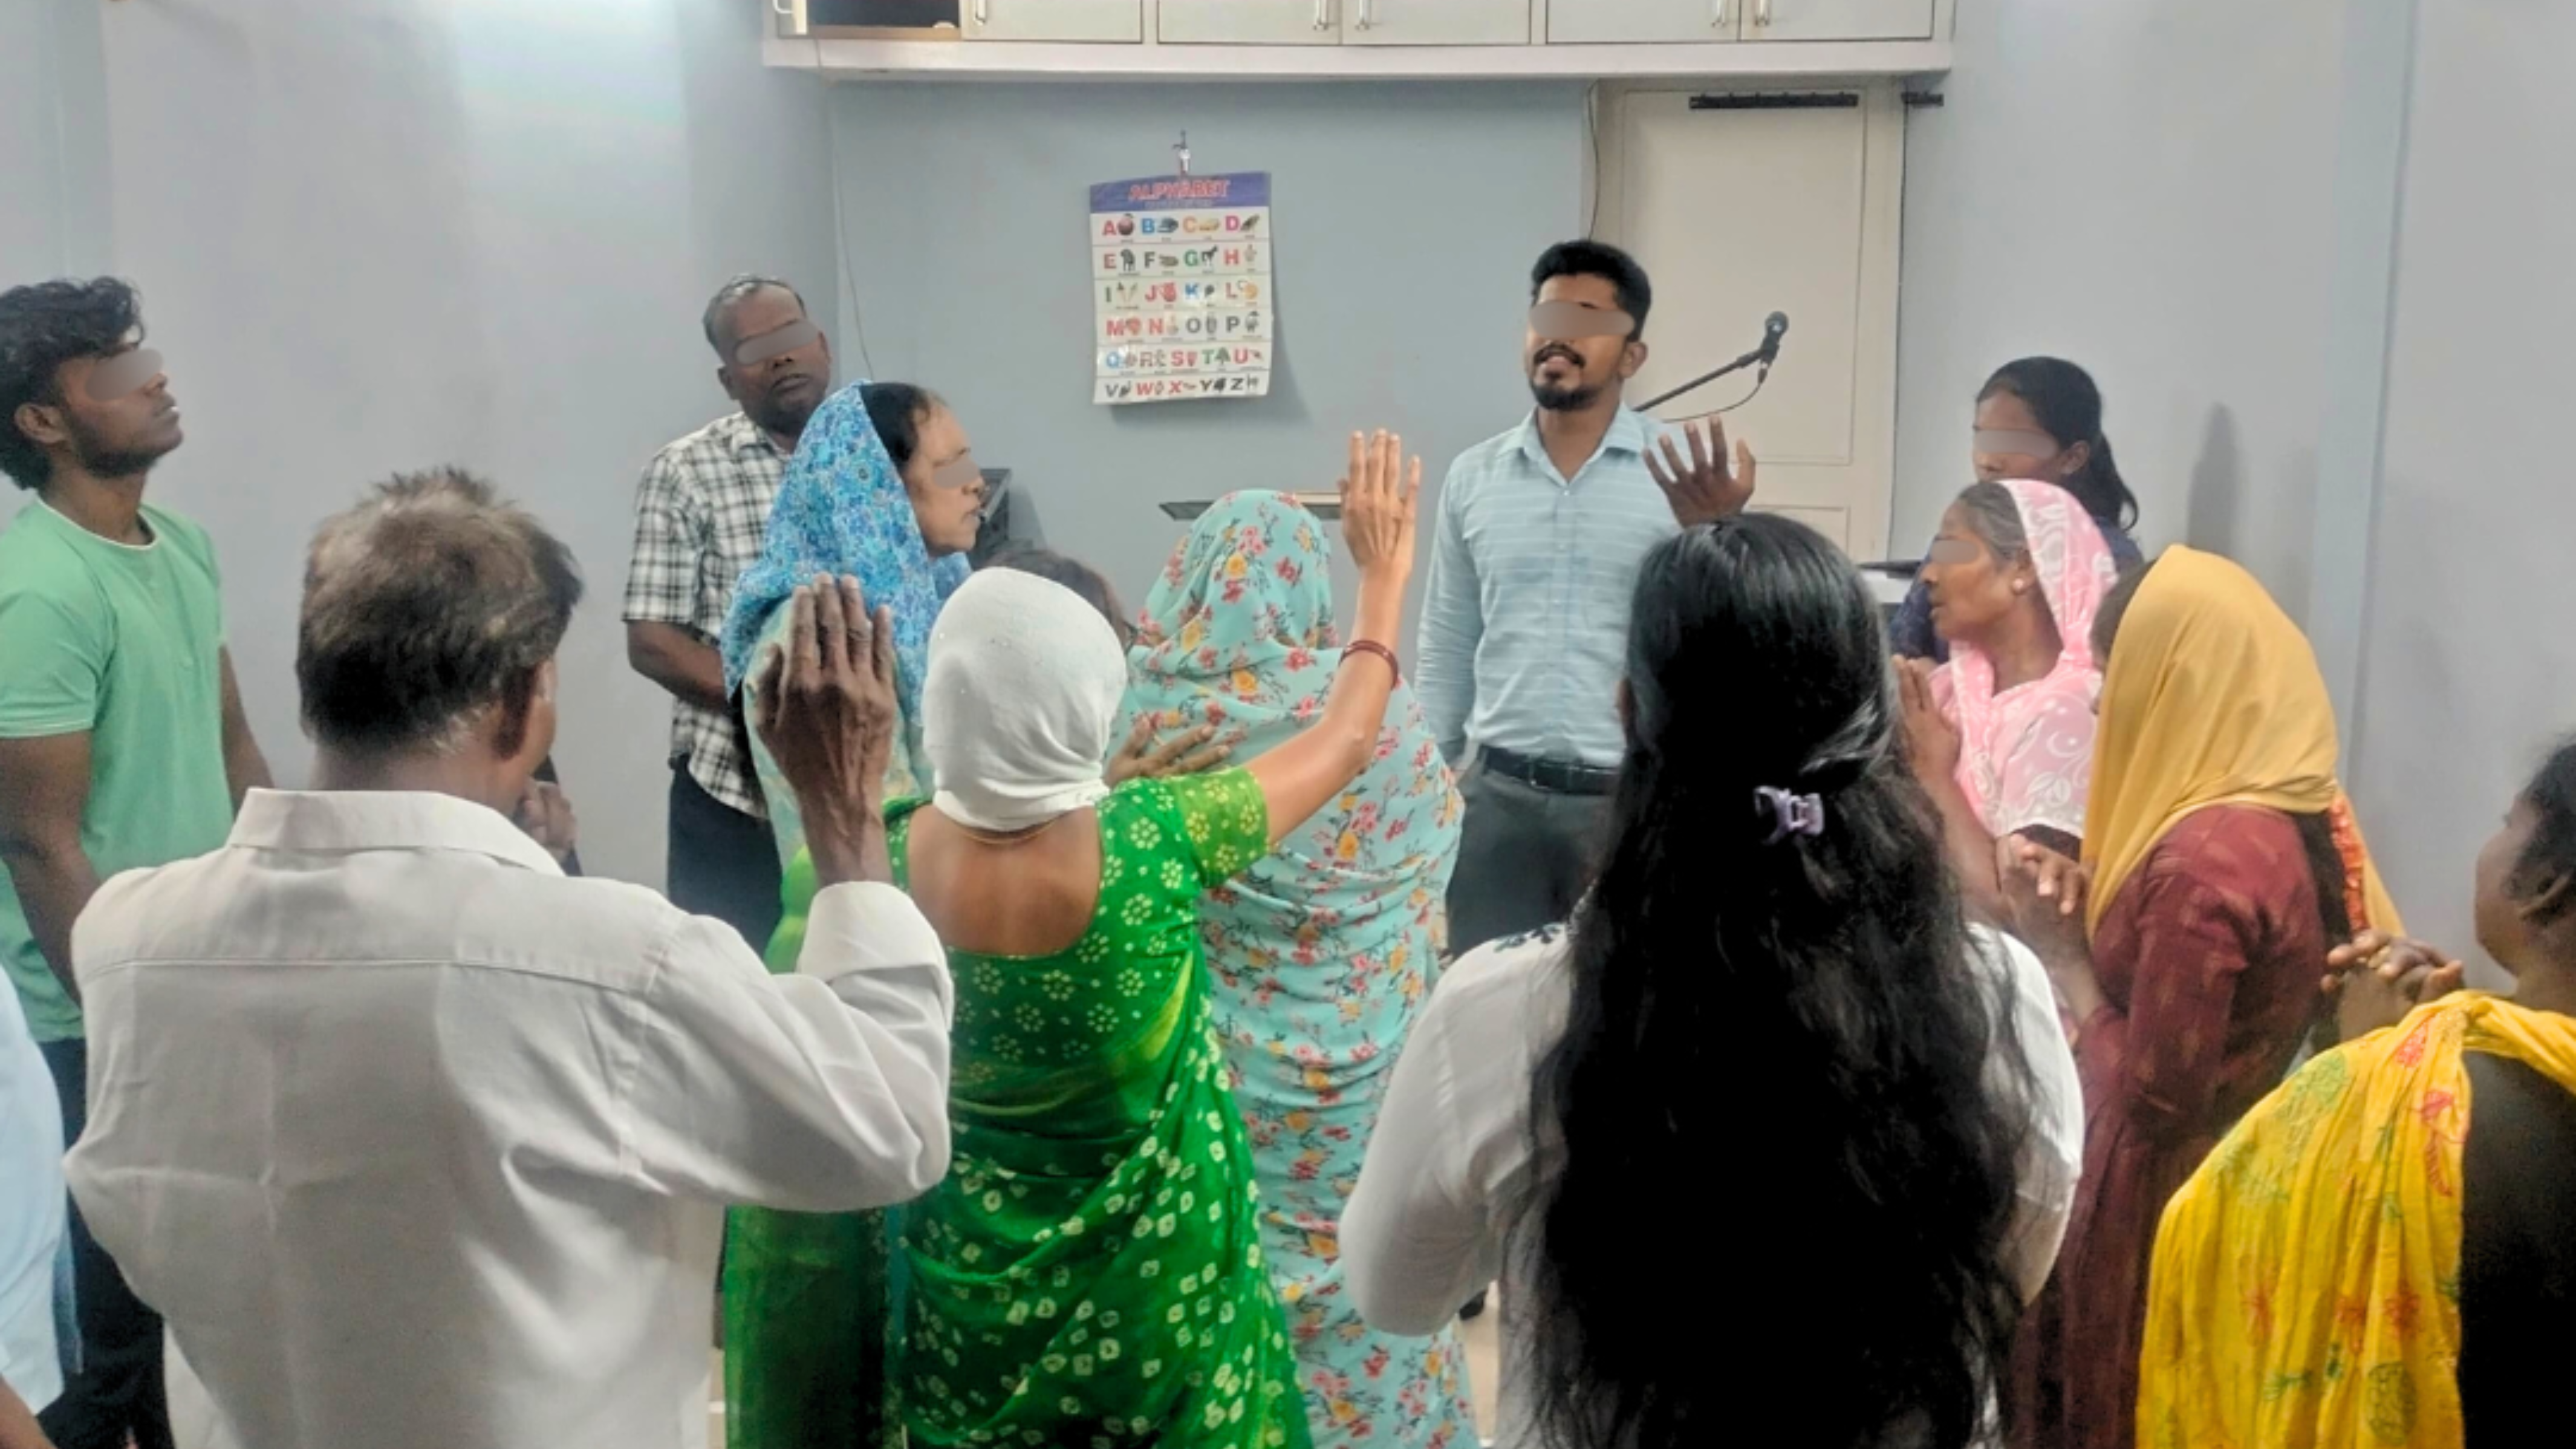 Group of church members raising hands in prayer.